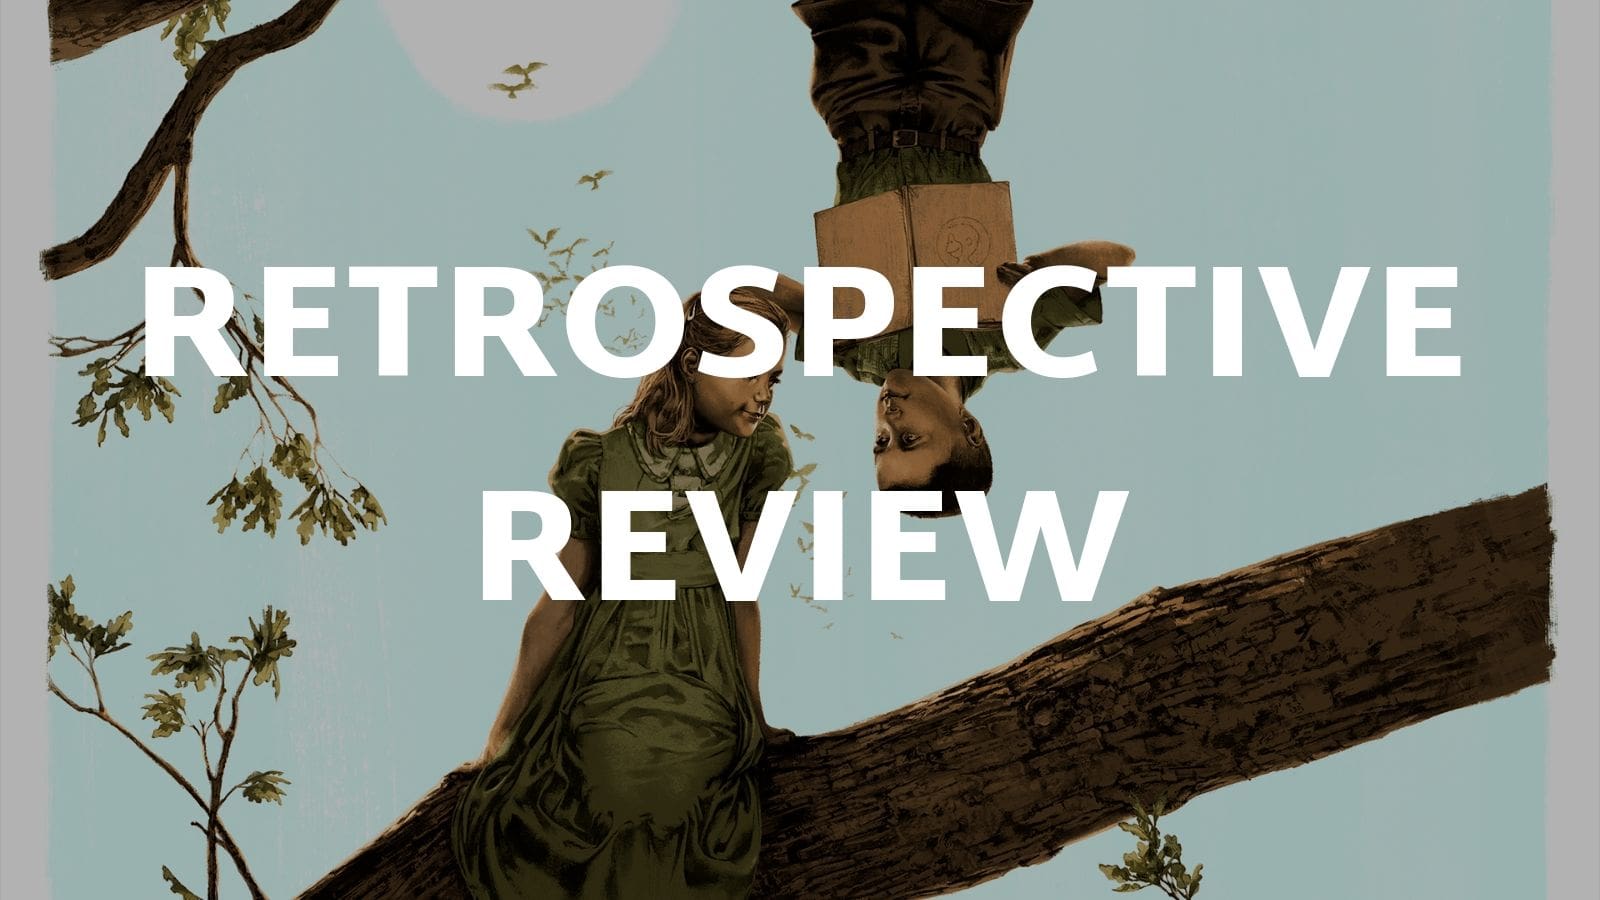 Forest Gump | A Retrospective Review